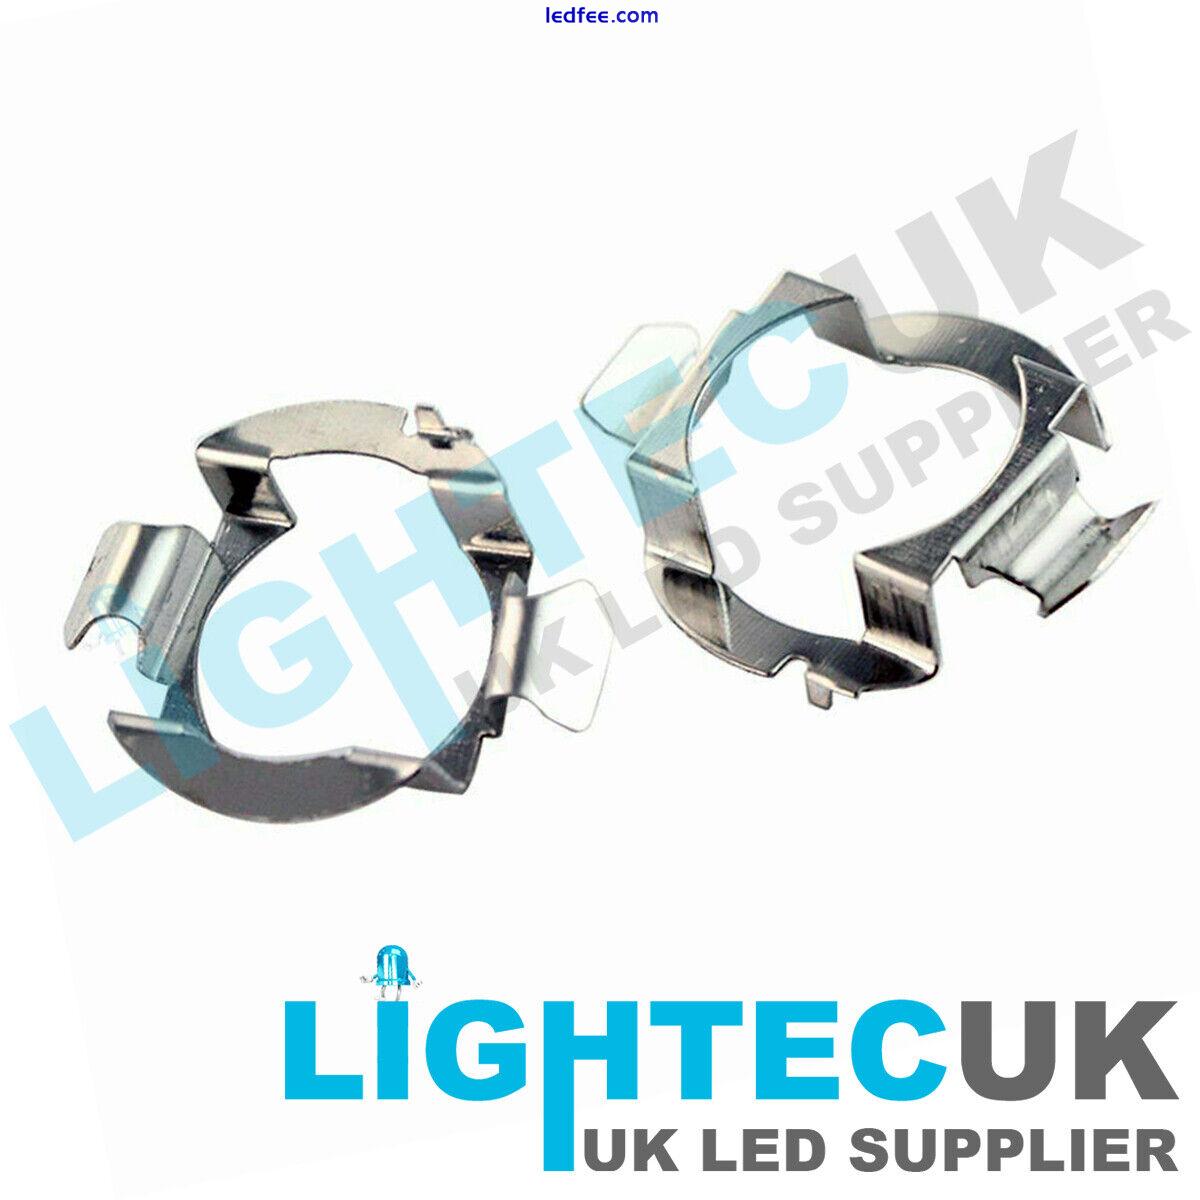 2 LIGHTEC UK UNIVERSAL H7 LED RETAINER BULB HOLDER CLIP ADAPTER HEAD LIGHT  5 